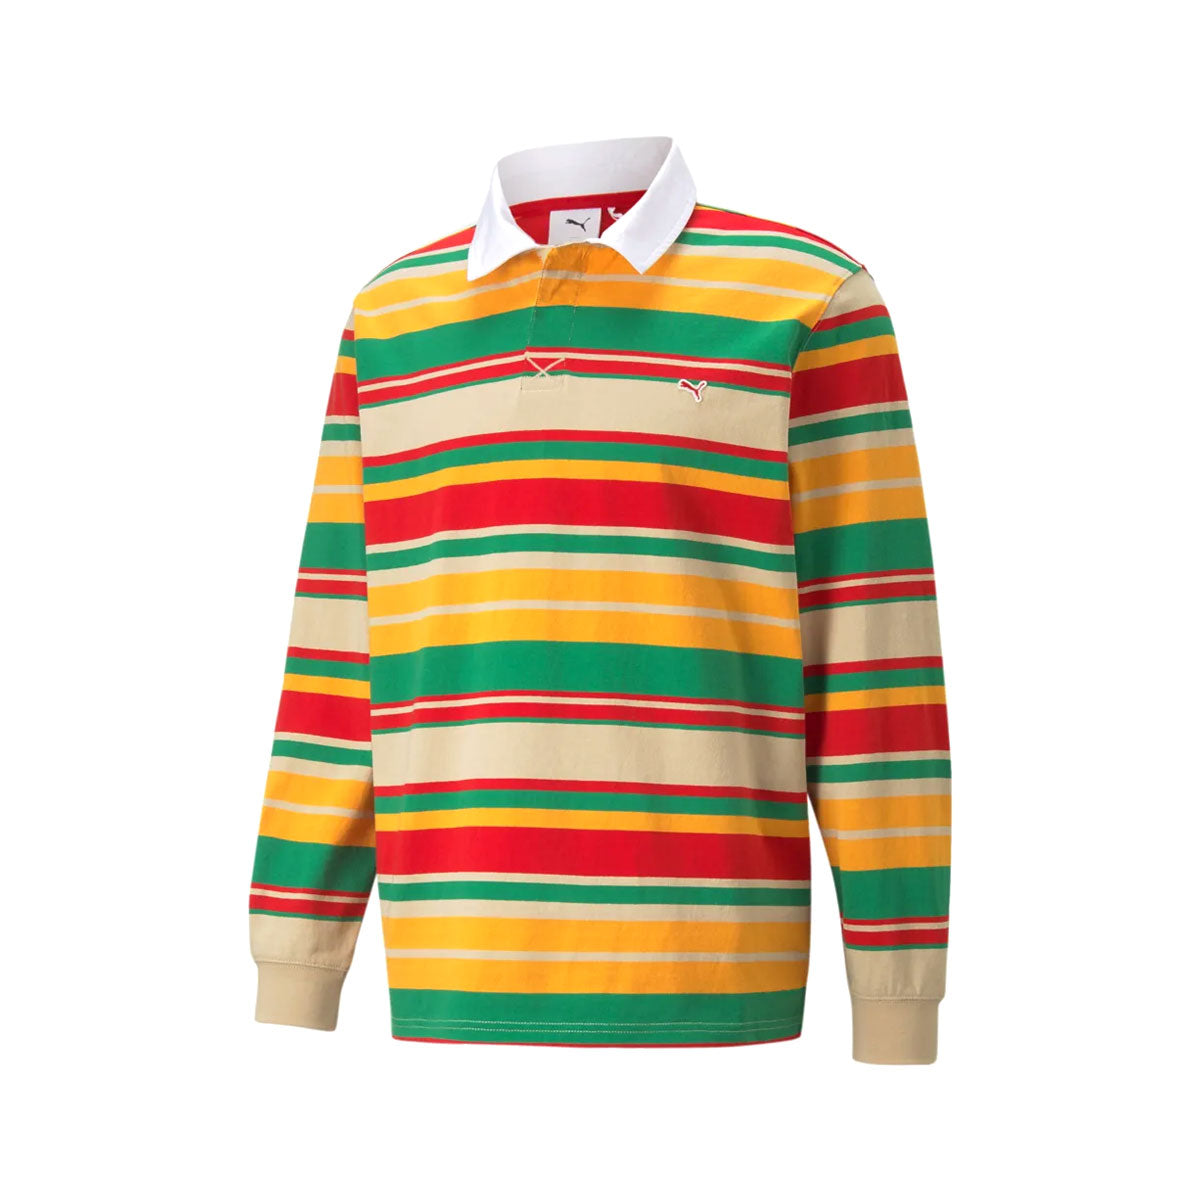 PUMA x A.C. MILAN Sleeve Polo Shirt Men's